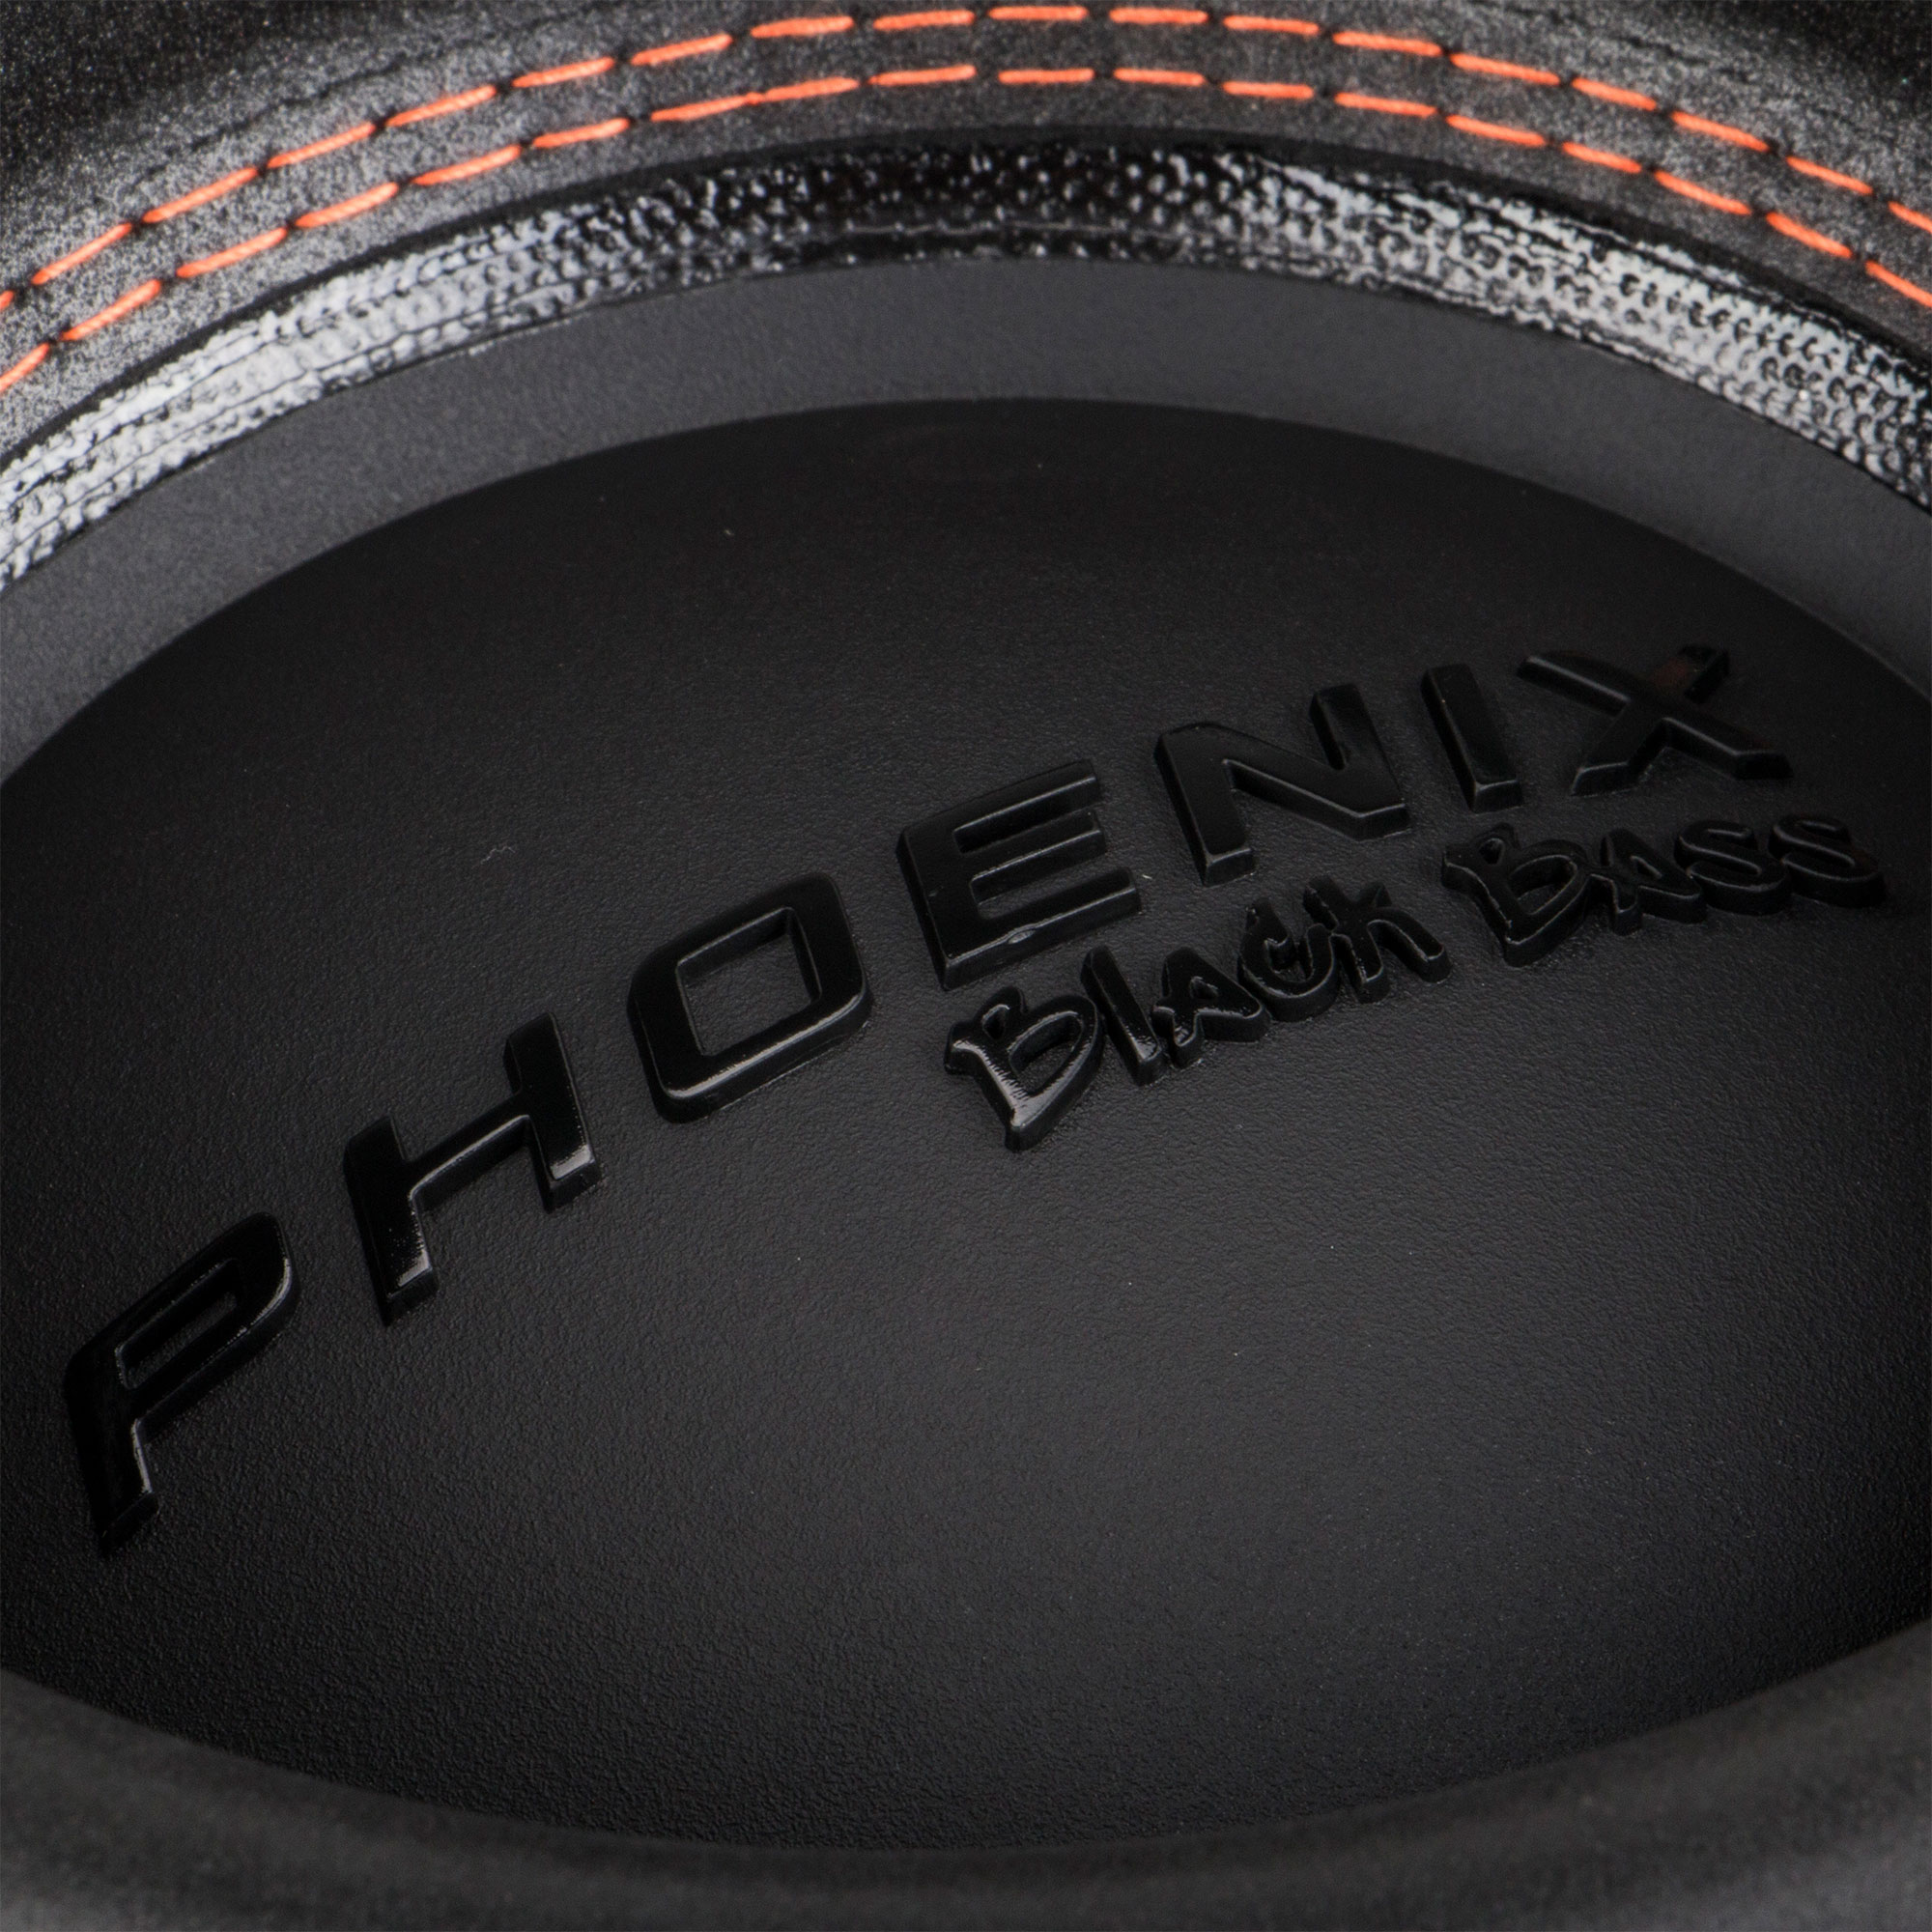 Феникс басс. DL Audio Black Bass 10. Сабвуфер DL Audio Phoenix Black Bass 10. DL Audio Phoenix Black Bass 12. Феникс Блэк басс 8.